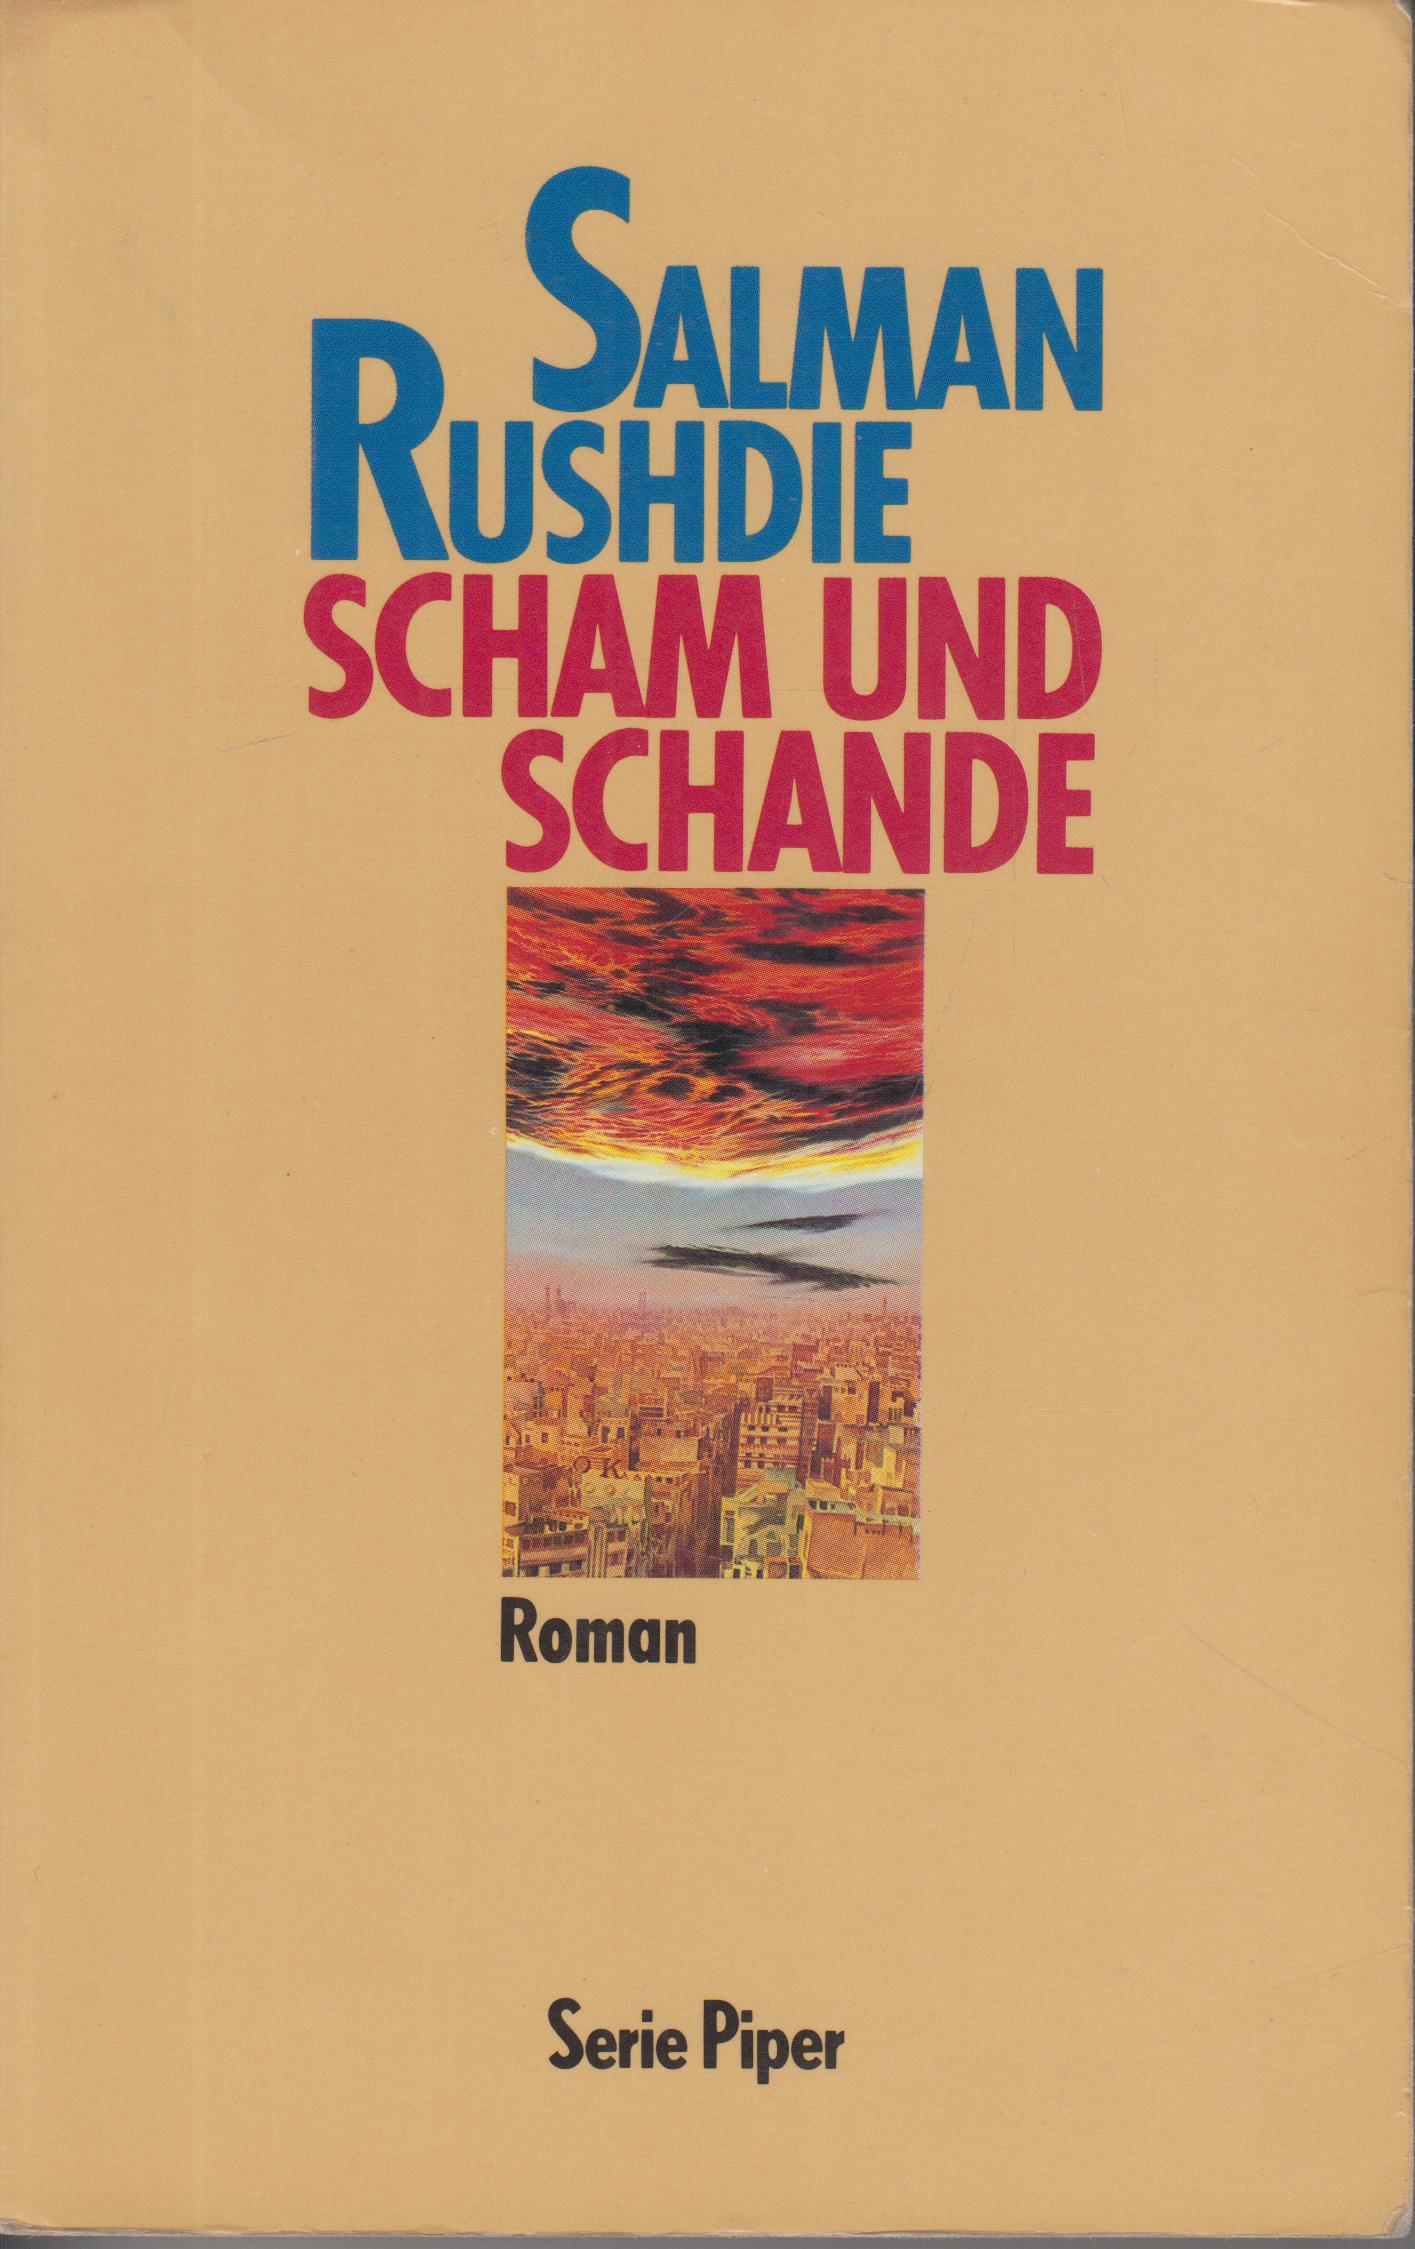 Scham und Schande (German language, 1985, R. Piper)